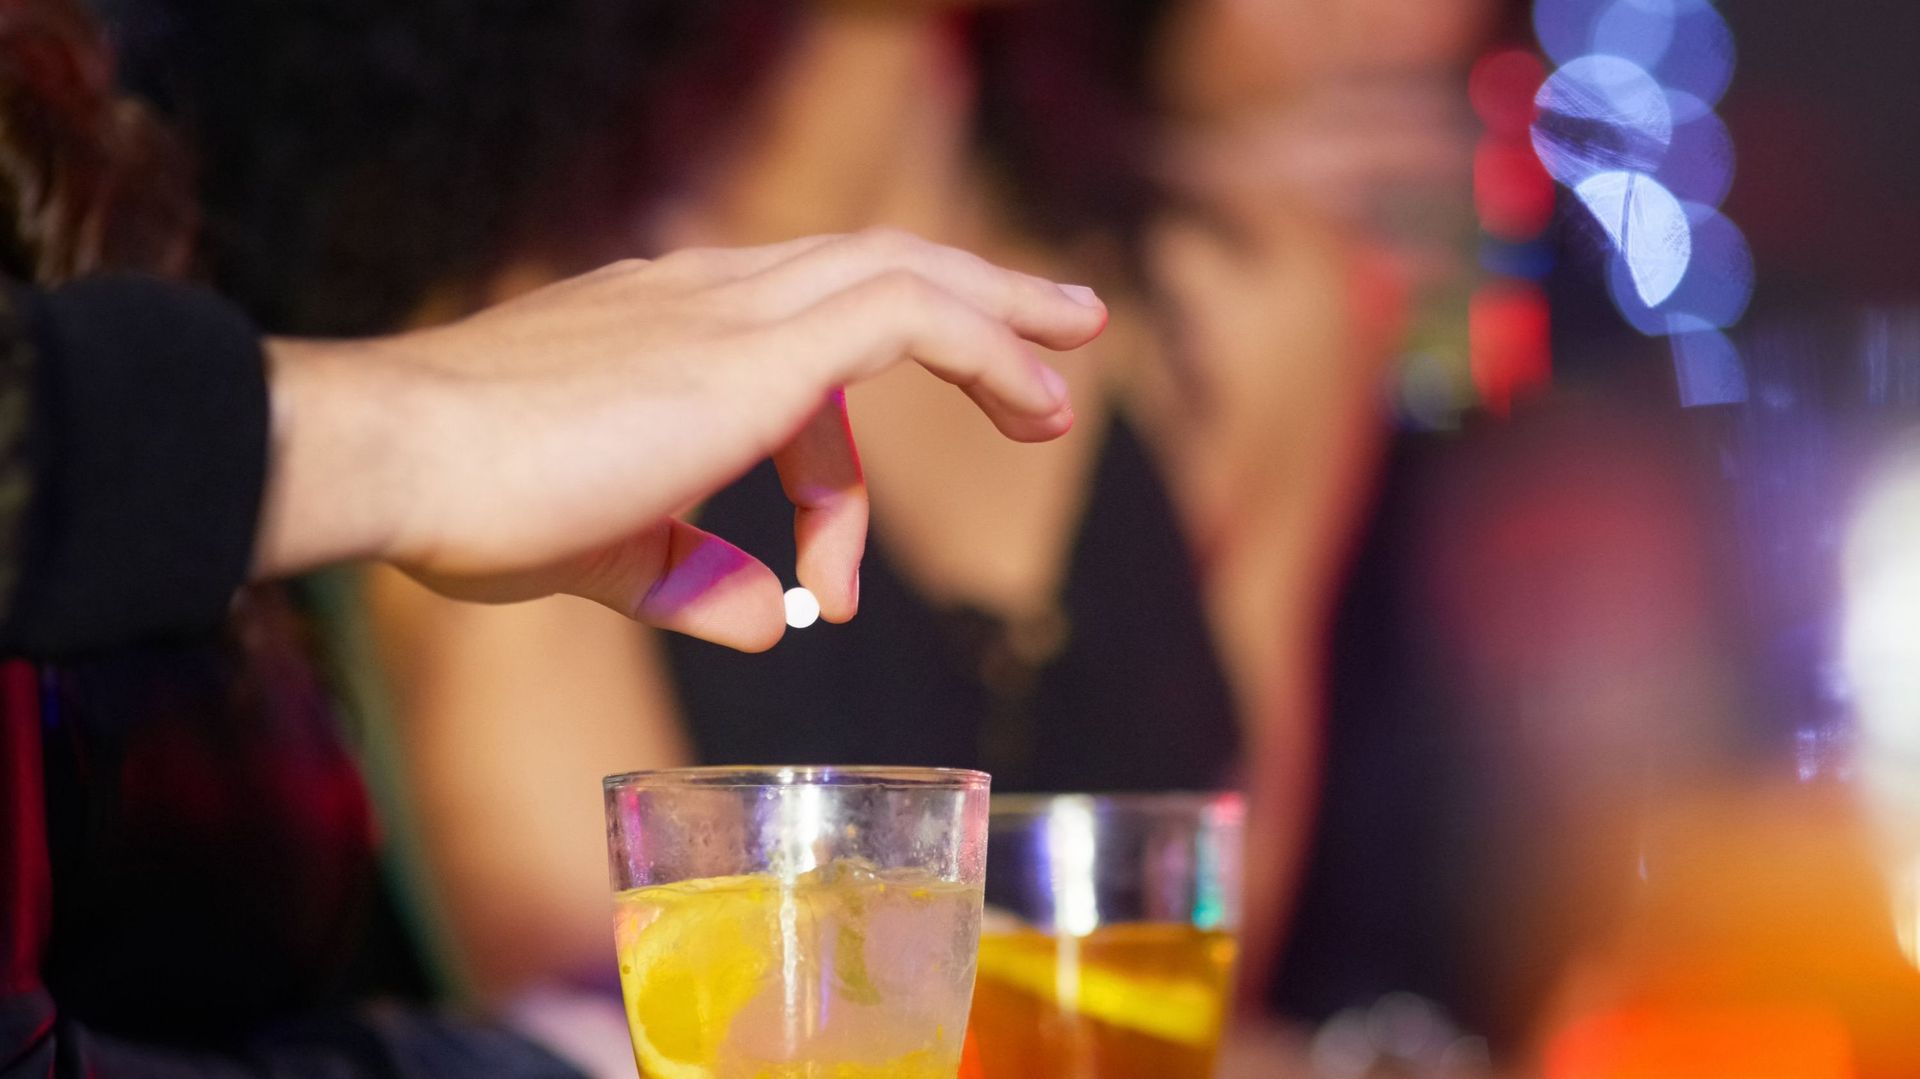 Selon les témoignages, les barmans incriminés drogueraient les filles en versant une substance dans leur verre au préalable (image d’illustration).